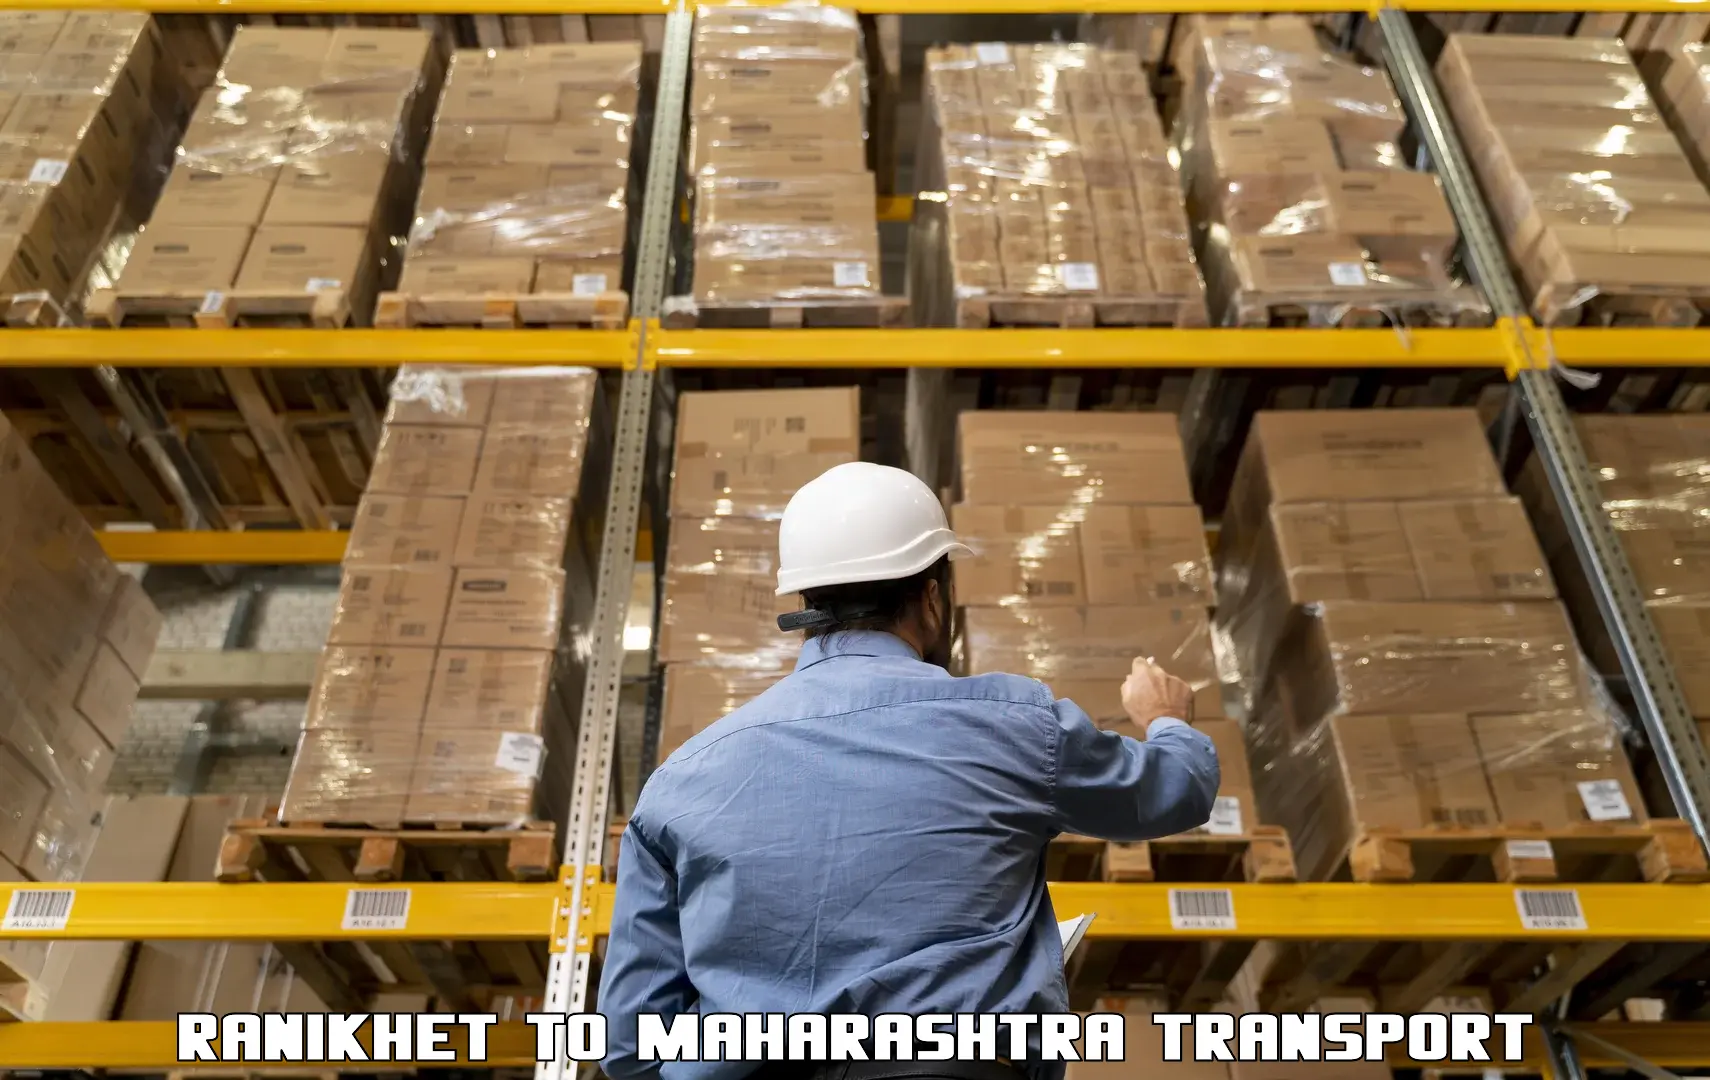 Truck transport companies in India Ranikhet to Maharashtra